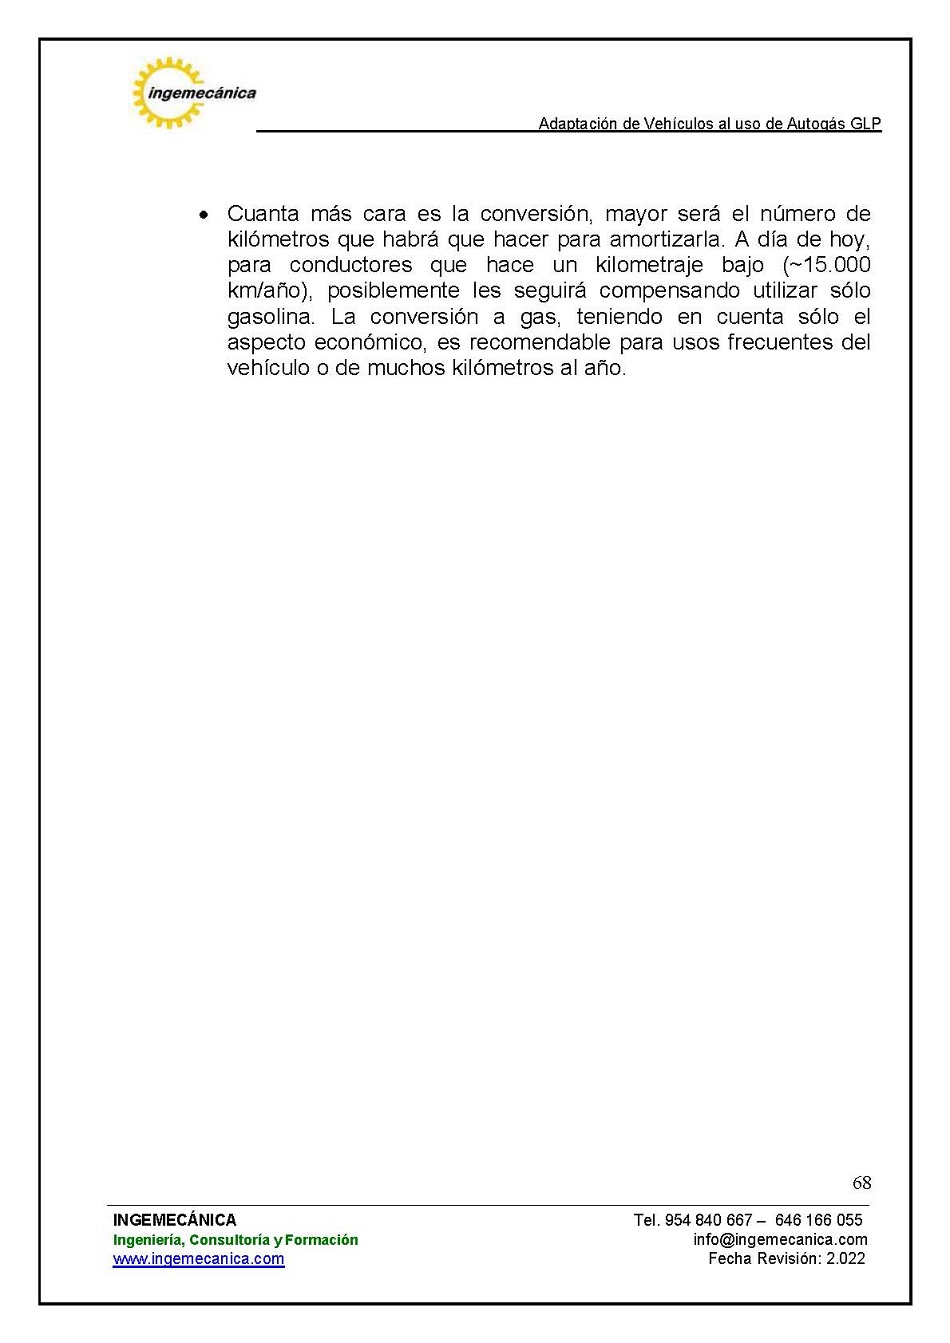 Curso para la Adaptación de Vehículos al uso de Autogás GLP. Página 68